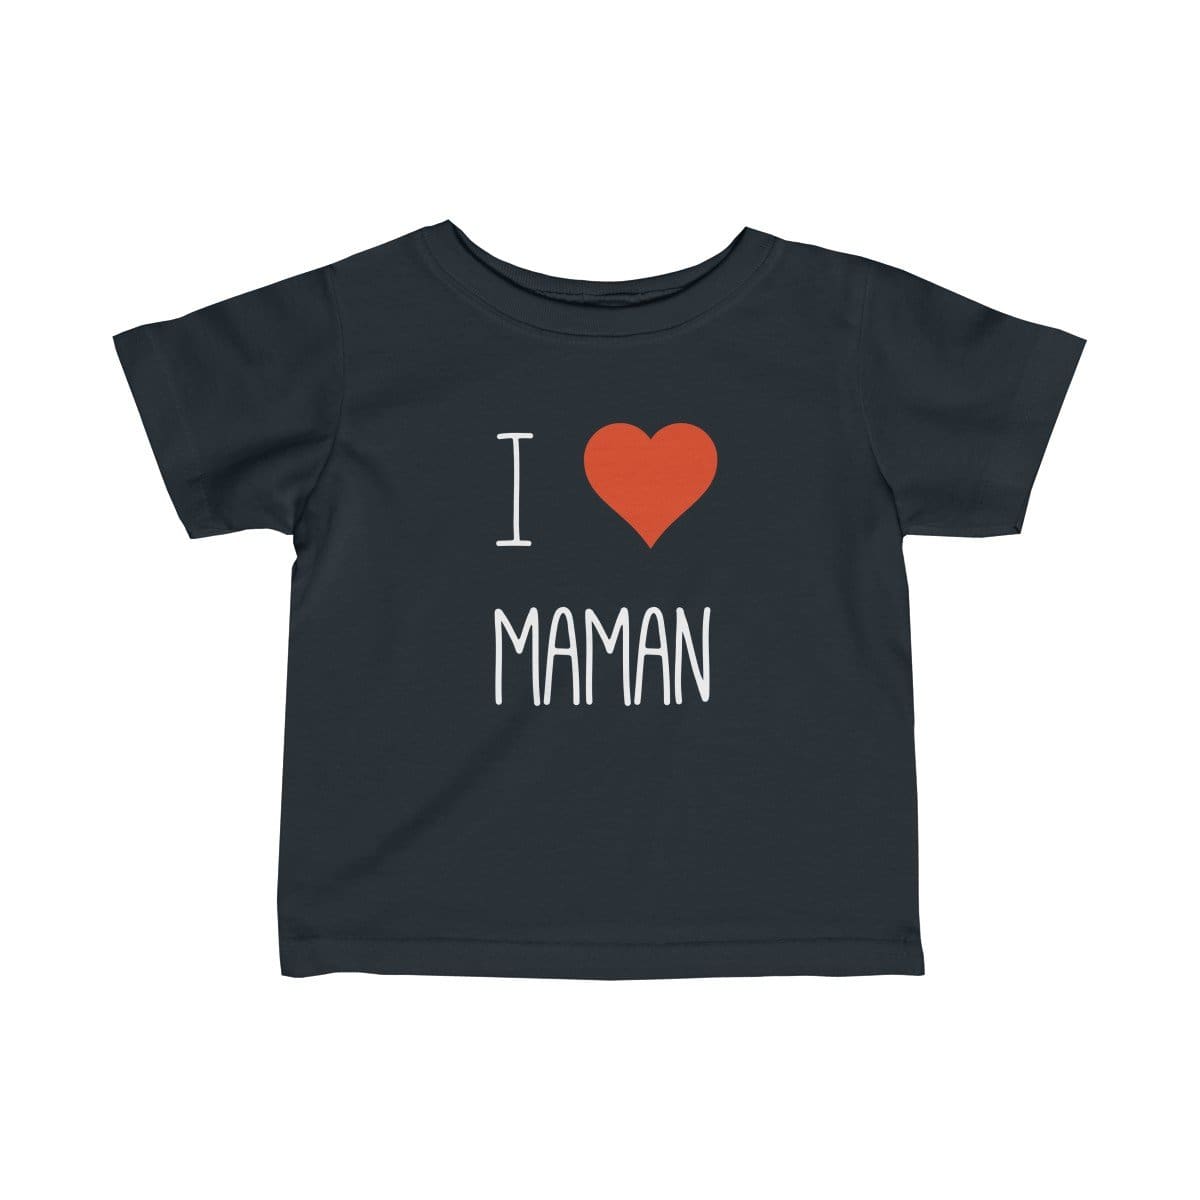 T-shirt enfant personnalisé allaitement maternage I love maman 100% coton